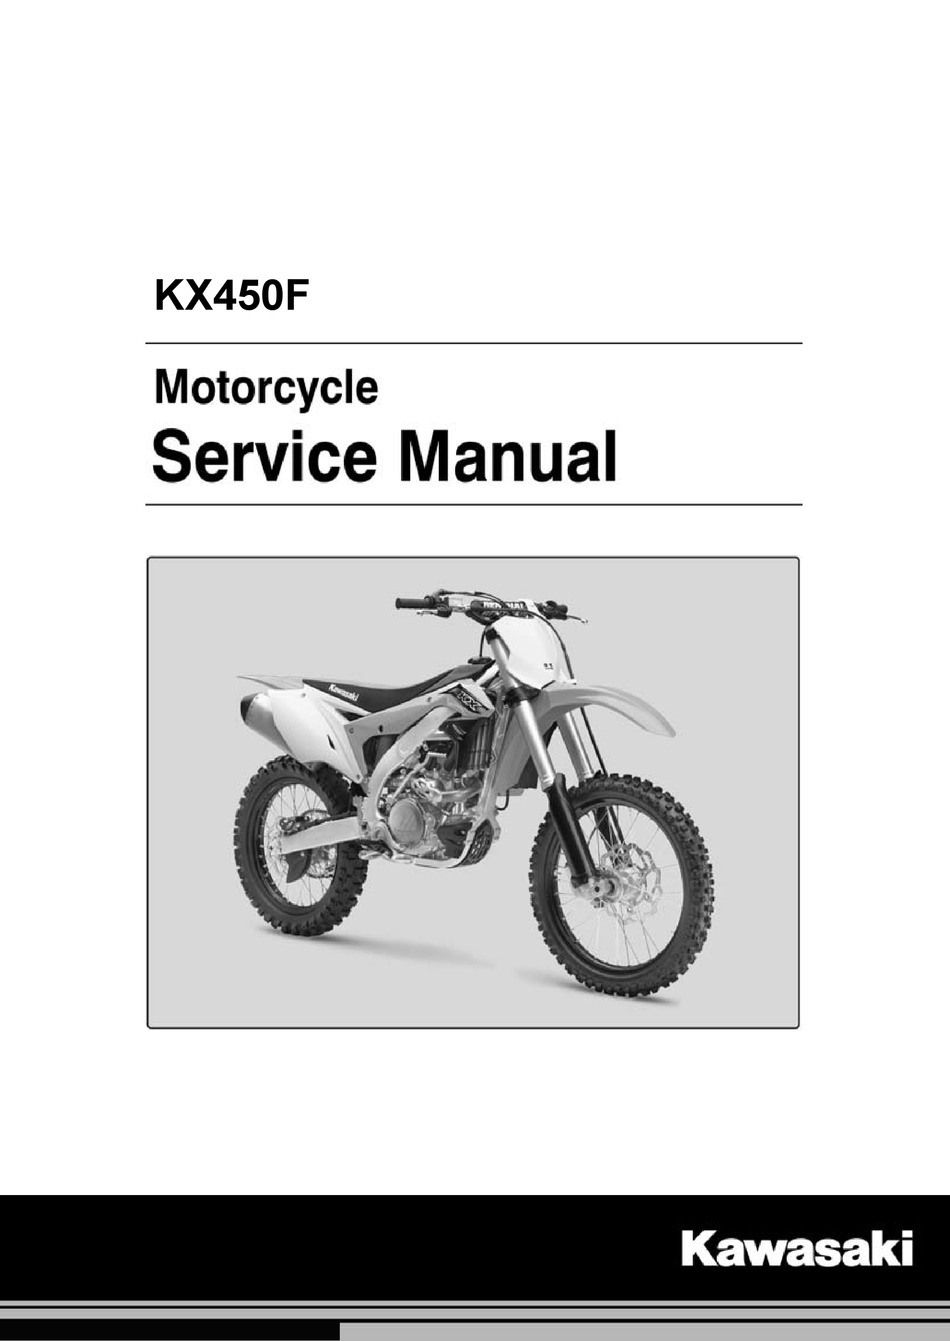 Genuine Kawasaki Fits 2016-2018 Kawasaki KX450F Service Manual Brand New